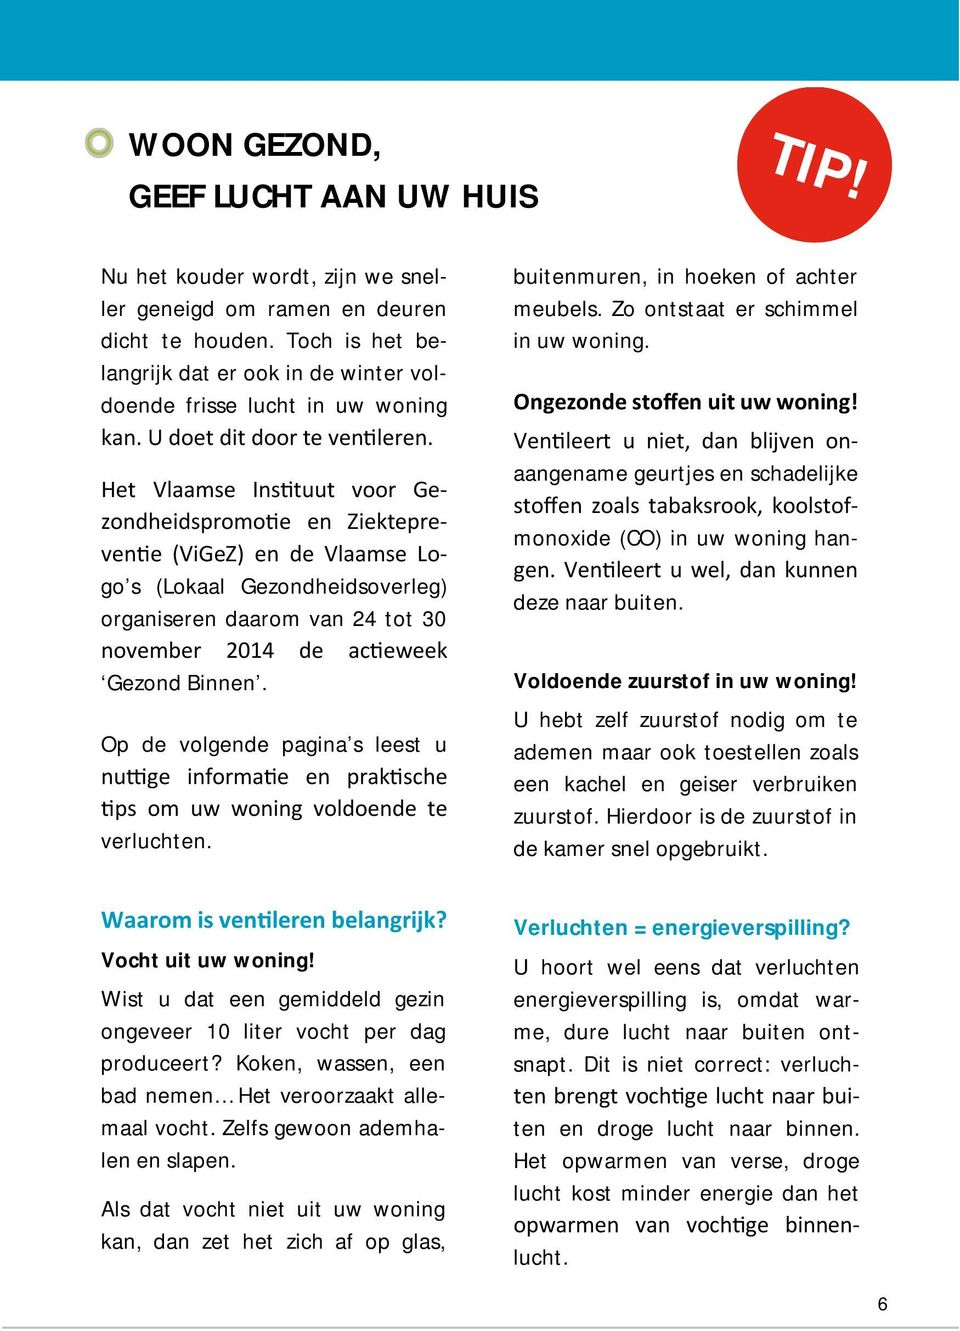 Het Vlaamse Instuut voor Gezondheidspromoe en Ziekteprevene (ViGeZ) en de Vlaamse Logo s (Lokaal Gezondheidsoverleg) organiseren daarom van 24 tot 30 november 2014 de aceweek Gezond Binnen.